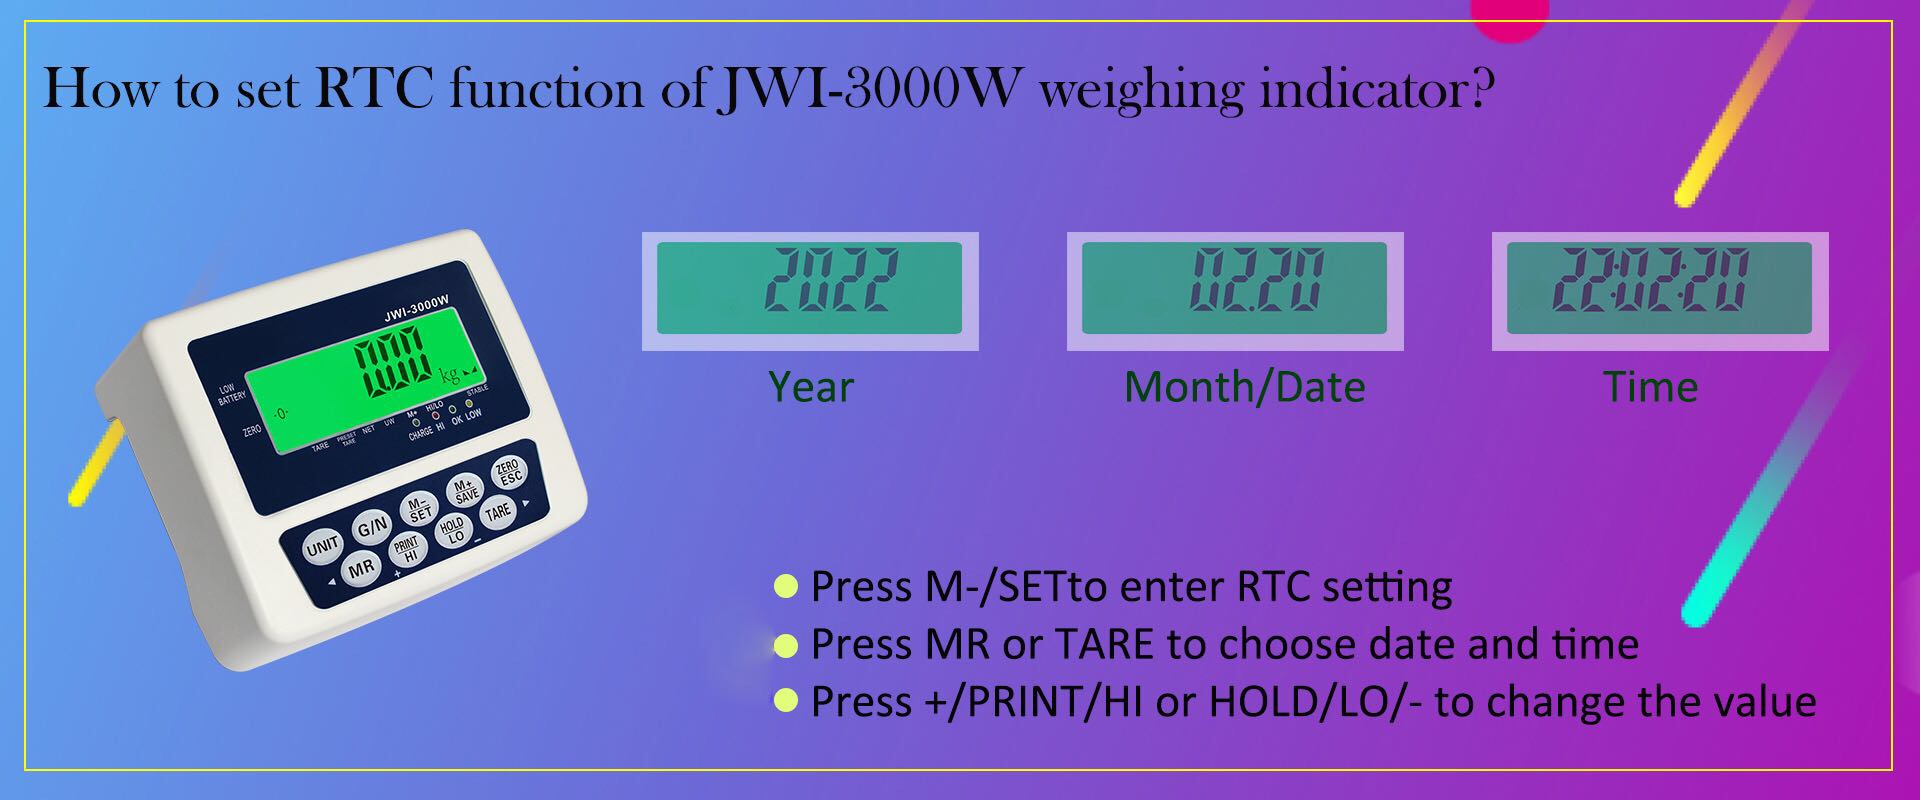 como definir a função RTC do indicador de pesagem industrial JWI-3000W